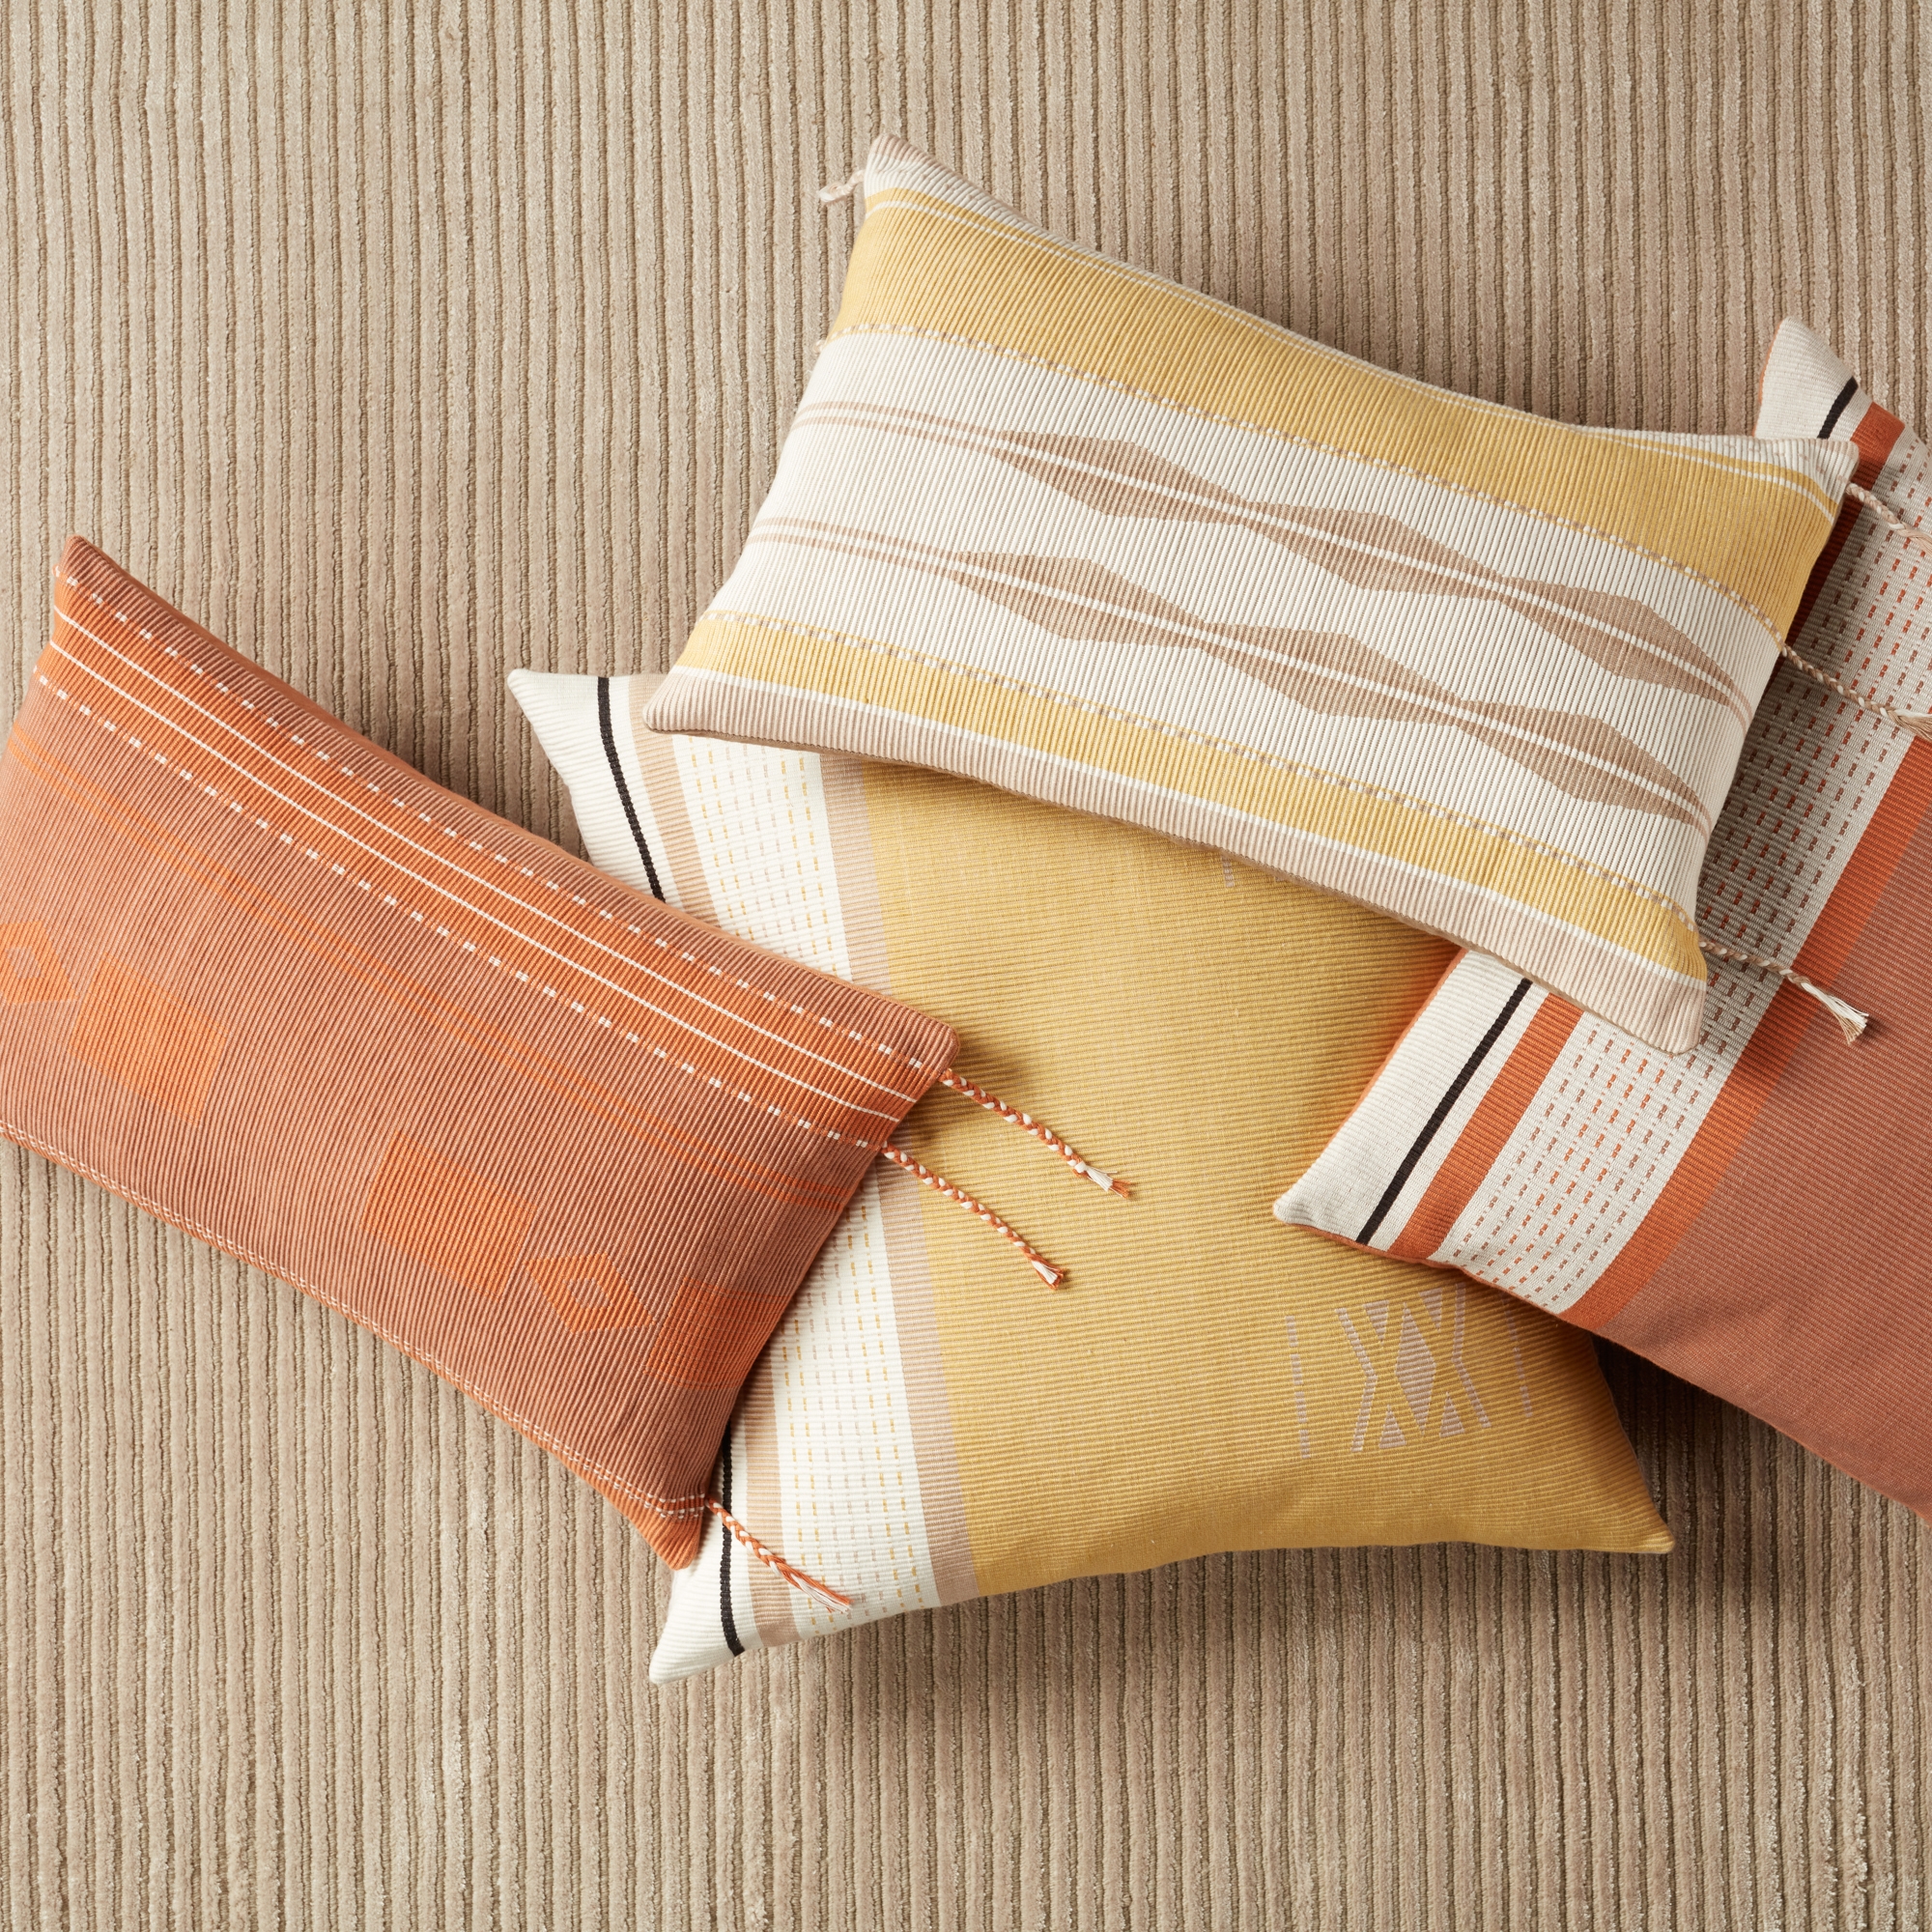 Bohdi Lumbar Pillow, Terracotta, 21" x 13" - Image 4